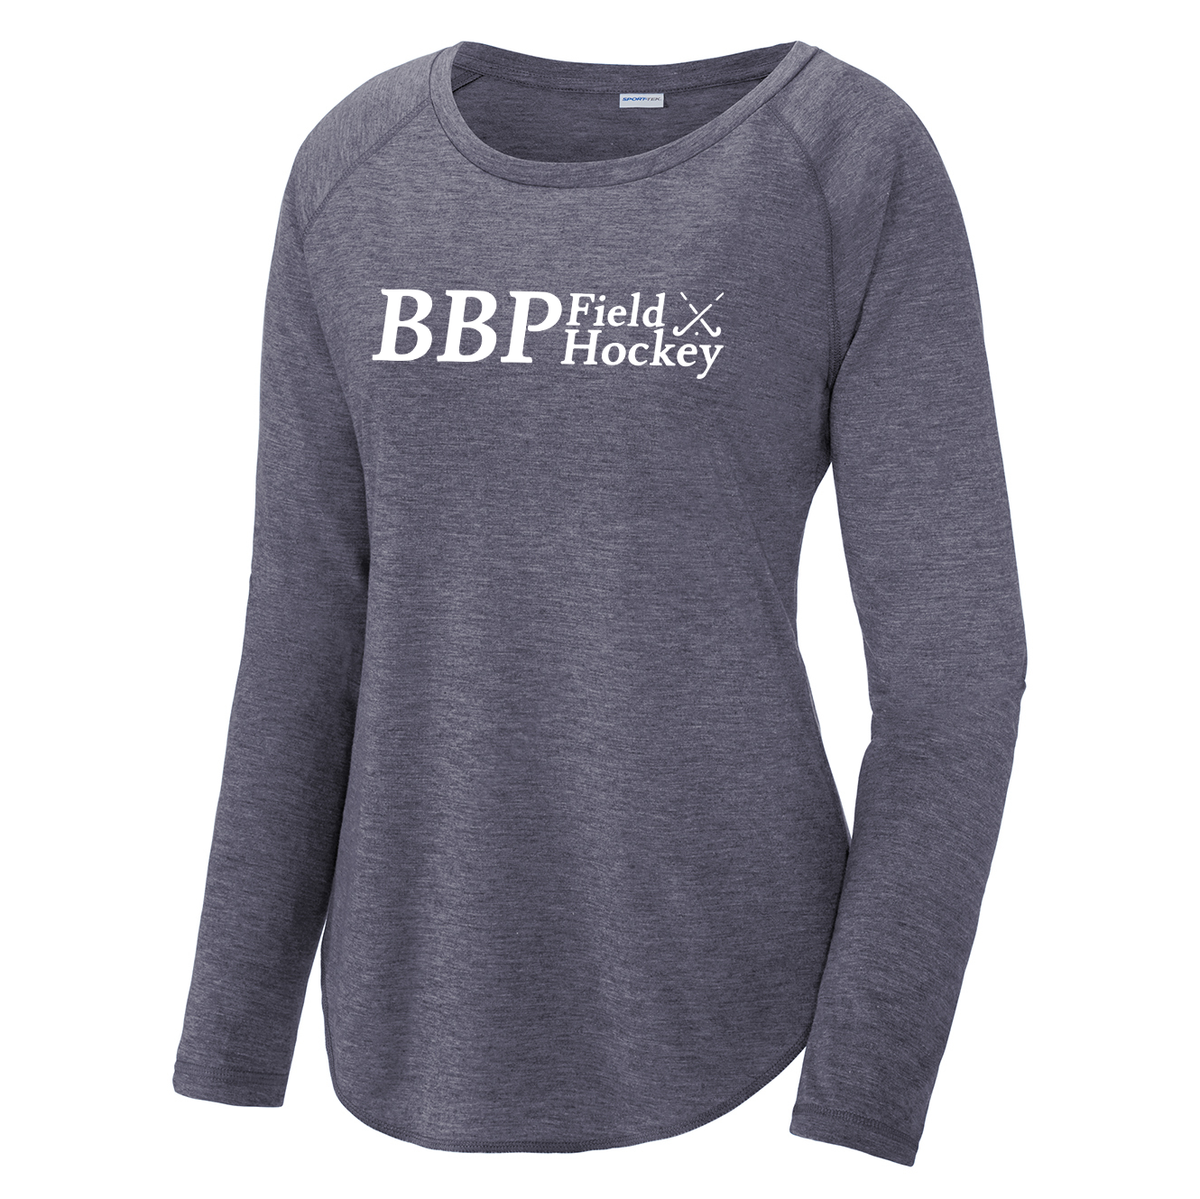 BBP Field Hockey Women's Raglan Long Sleeve CottonTouch